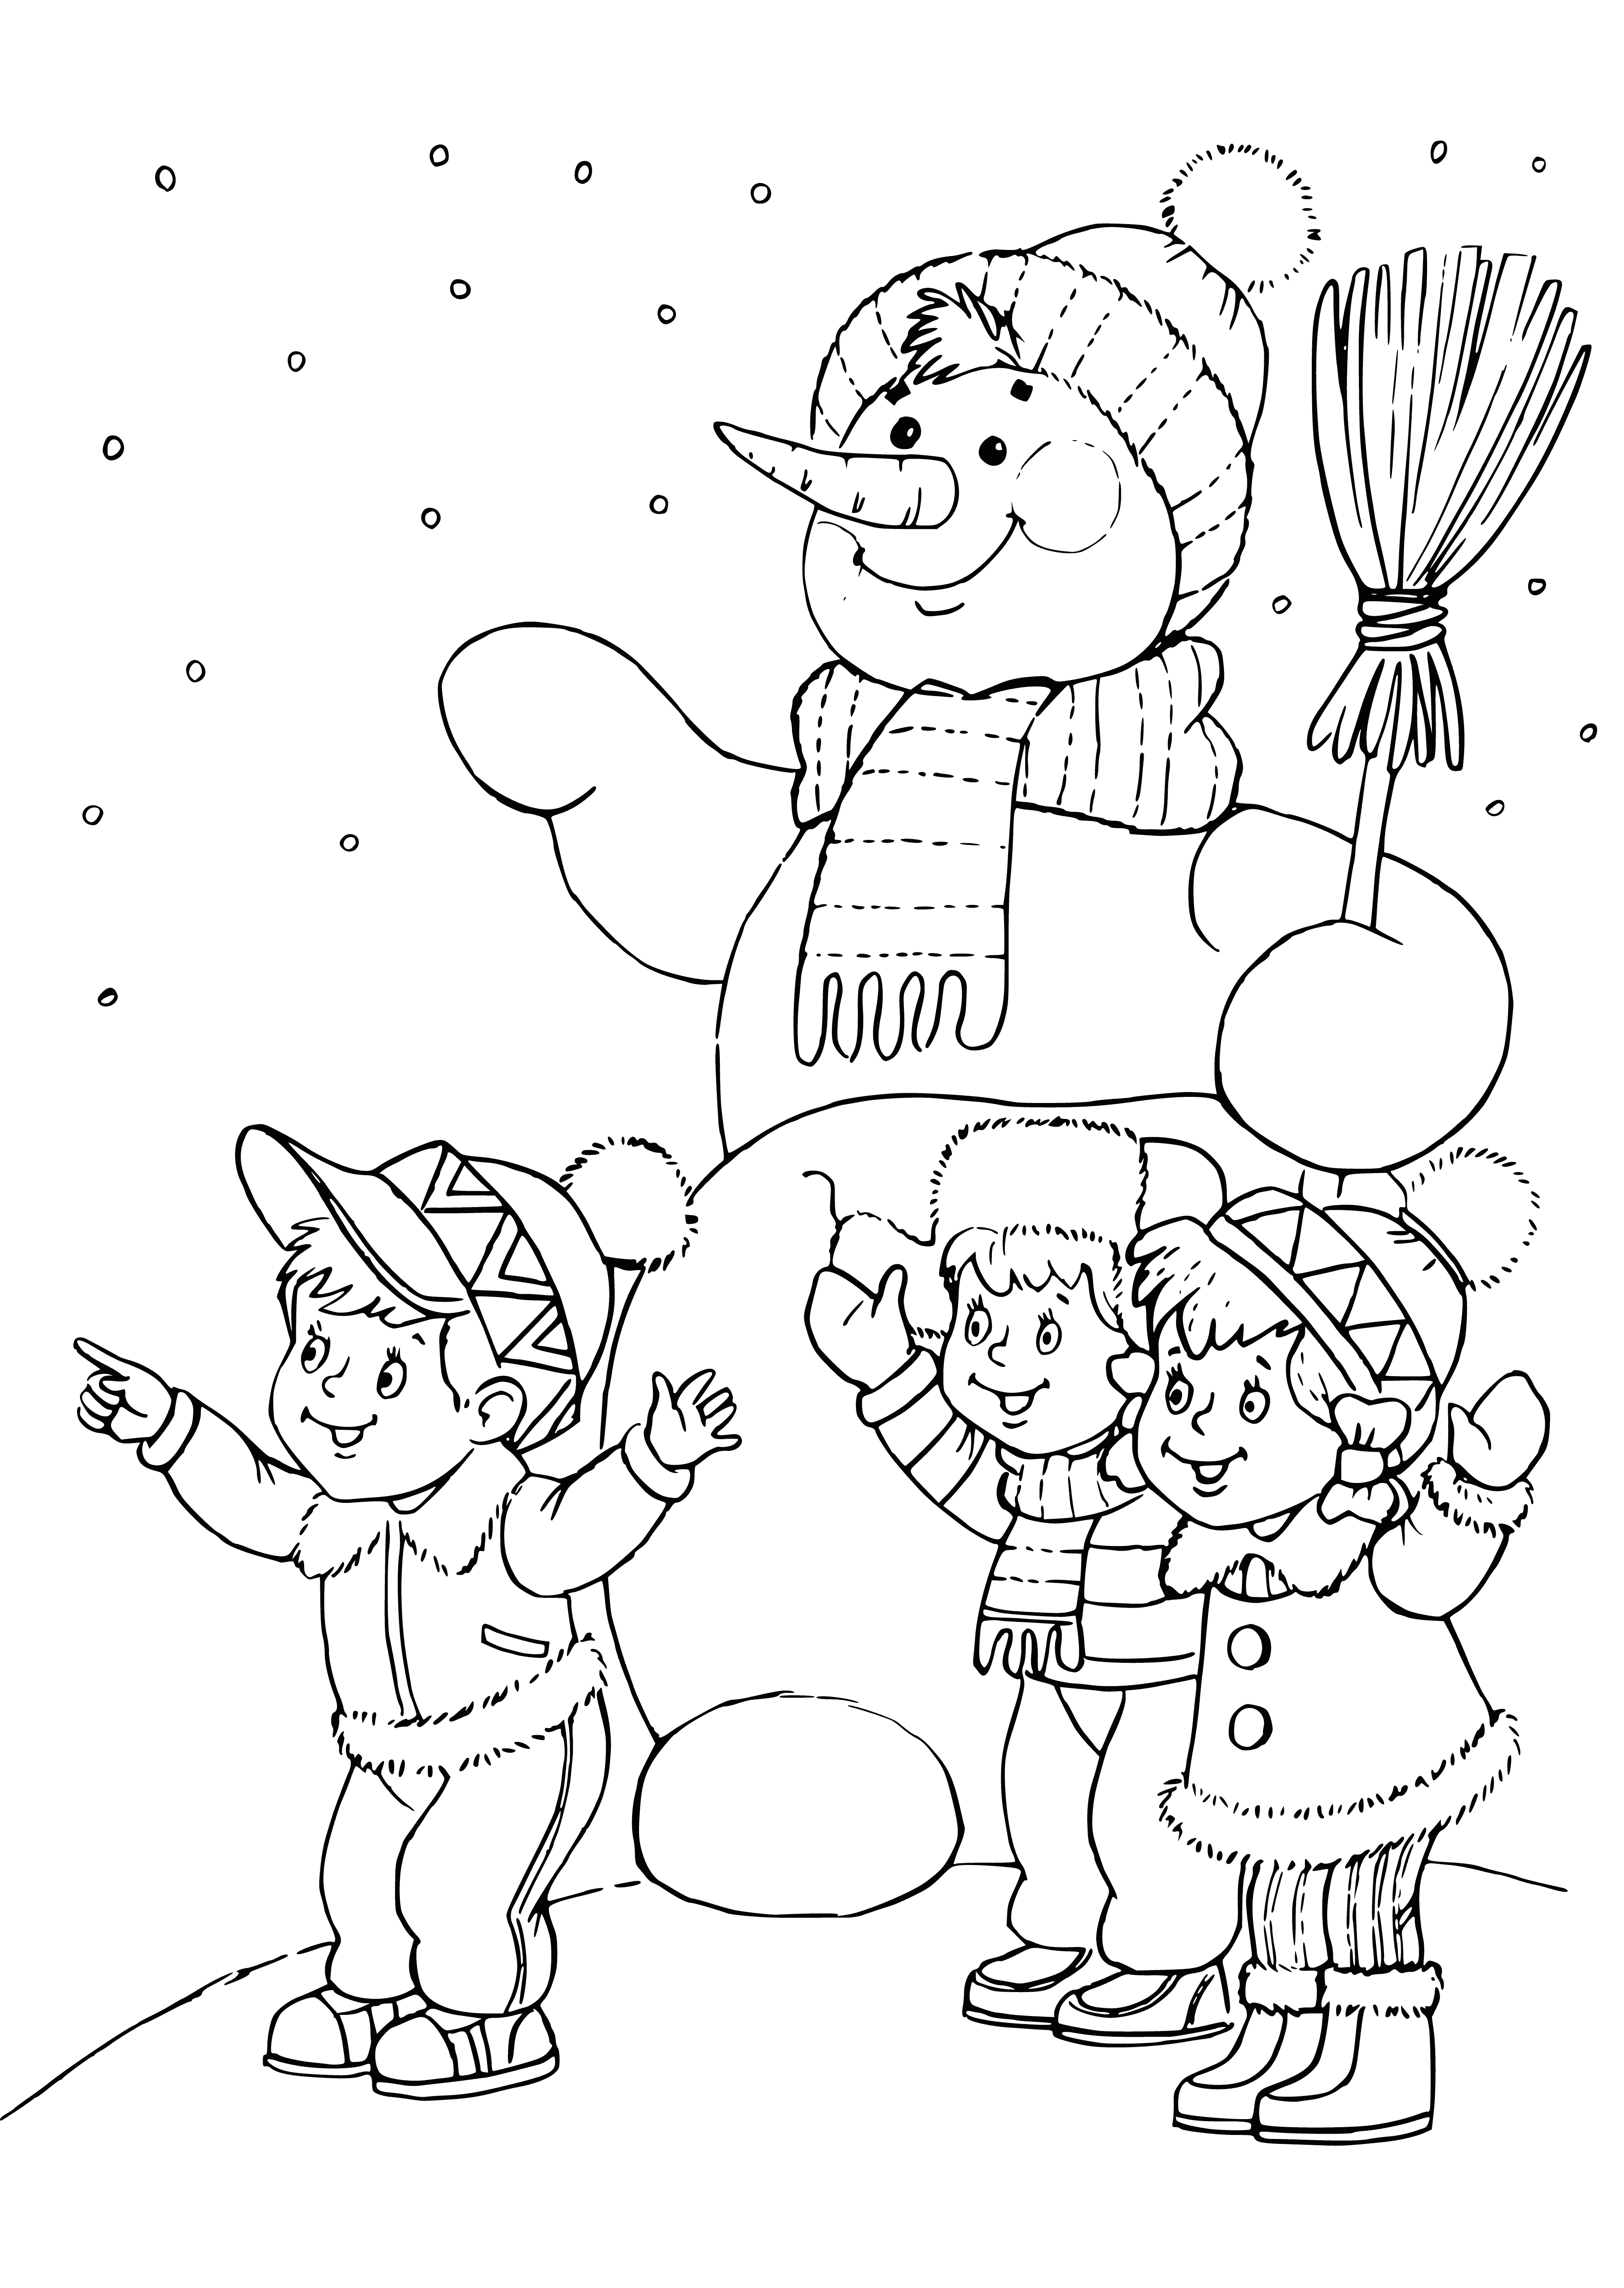 3 snowmen: 2 kids in hats & scarves & 1 adult wearing a top hat in a snow-filled field.